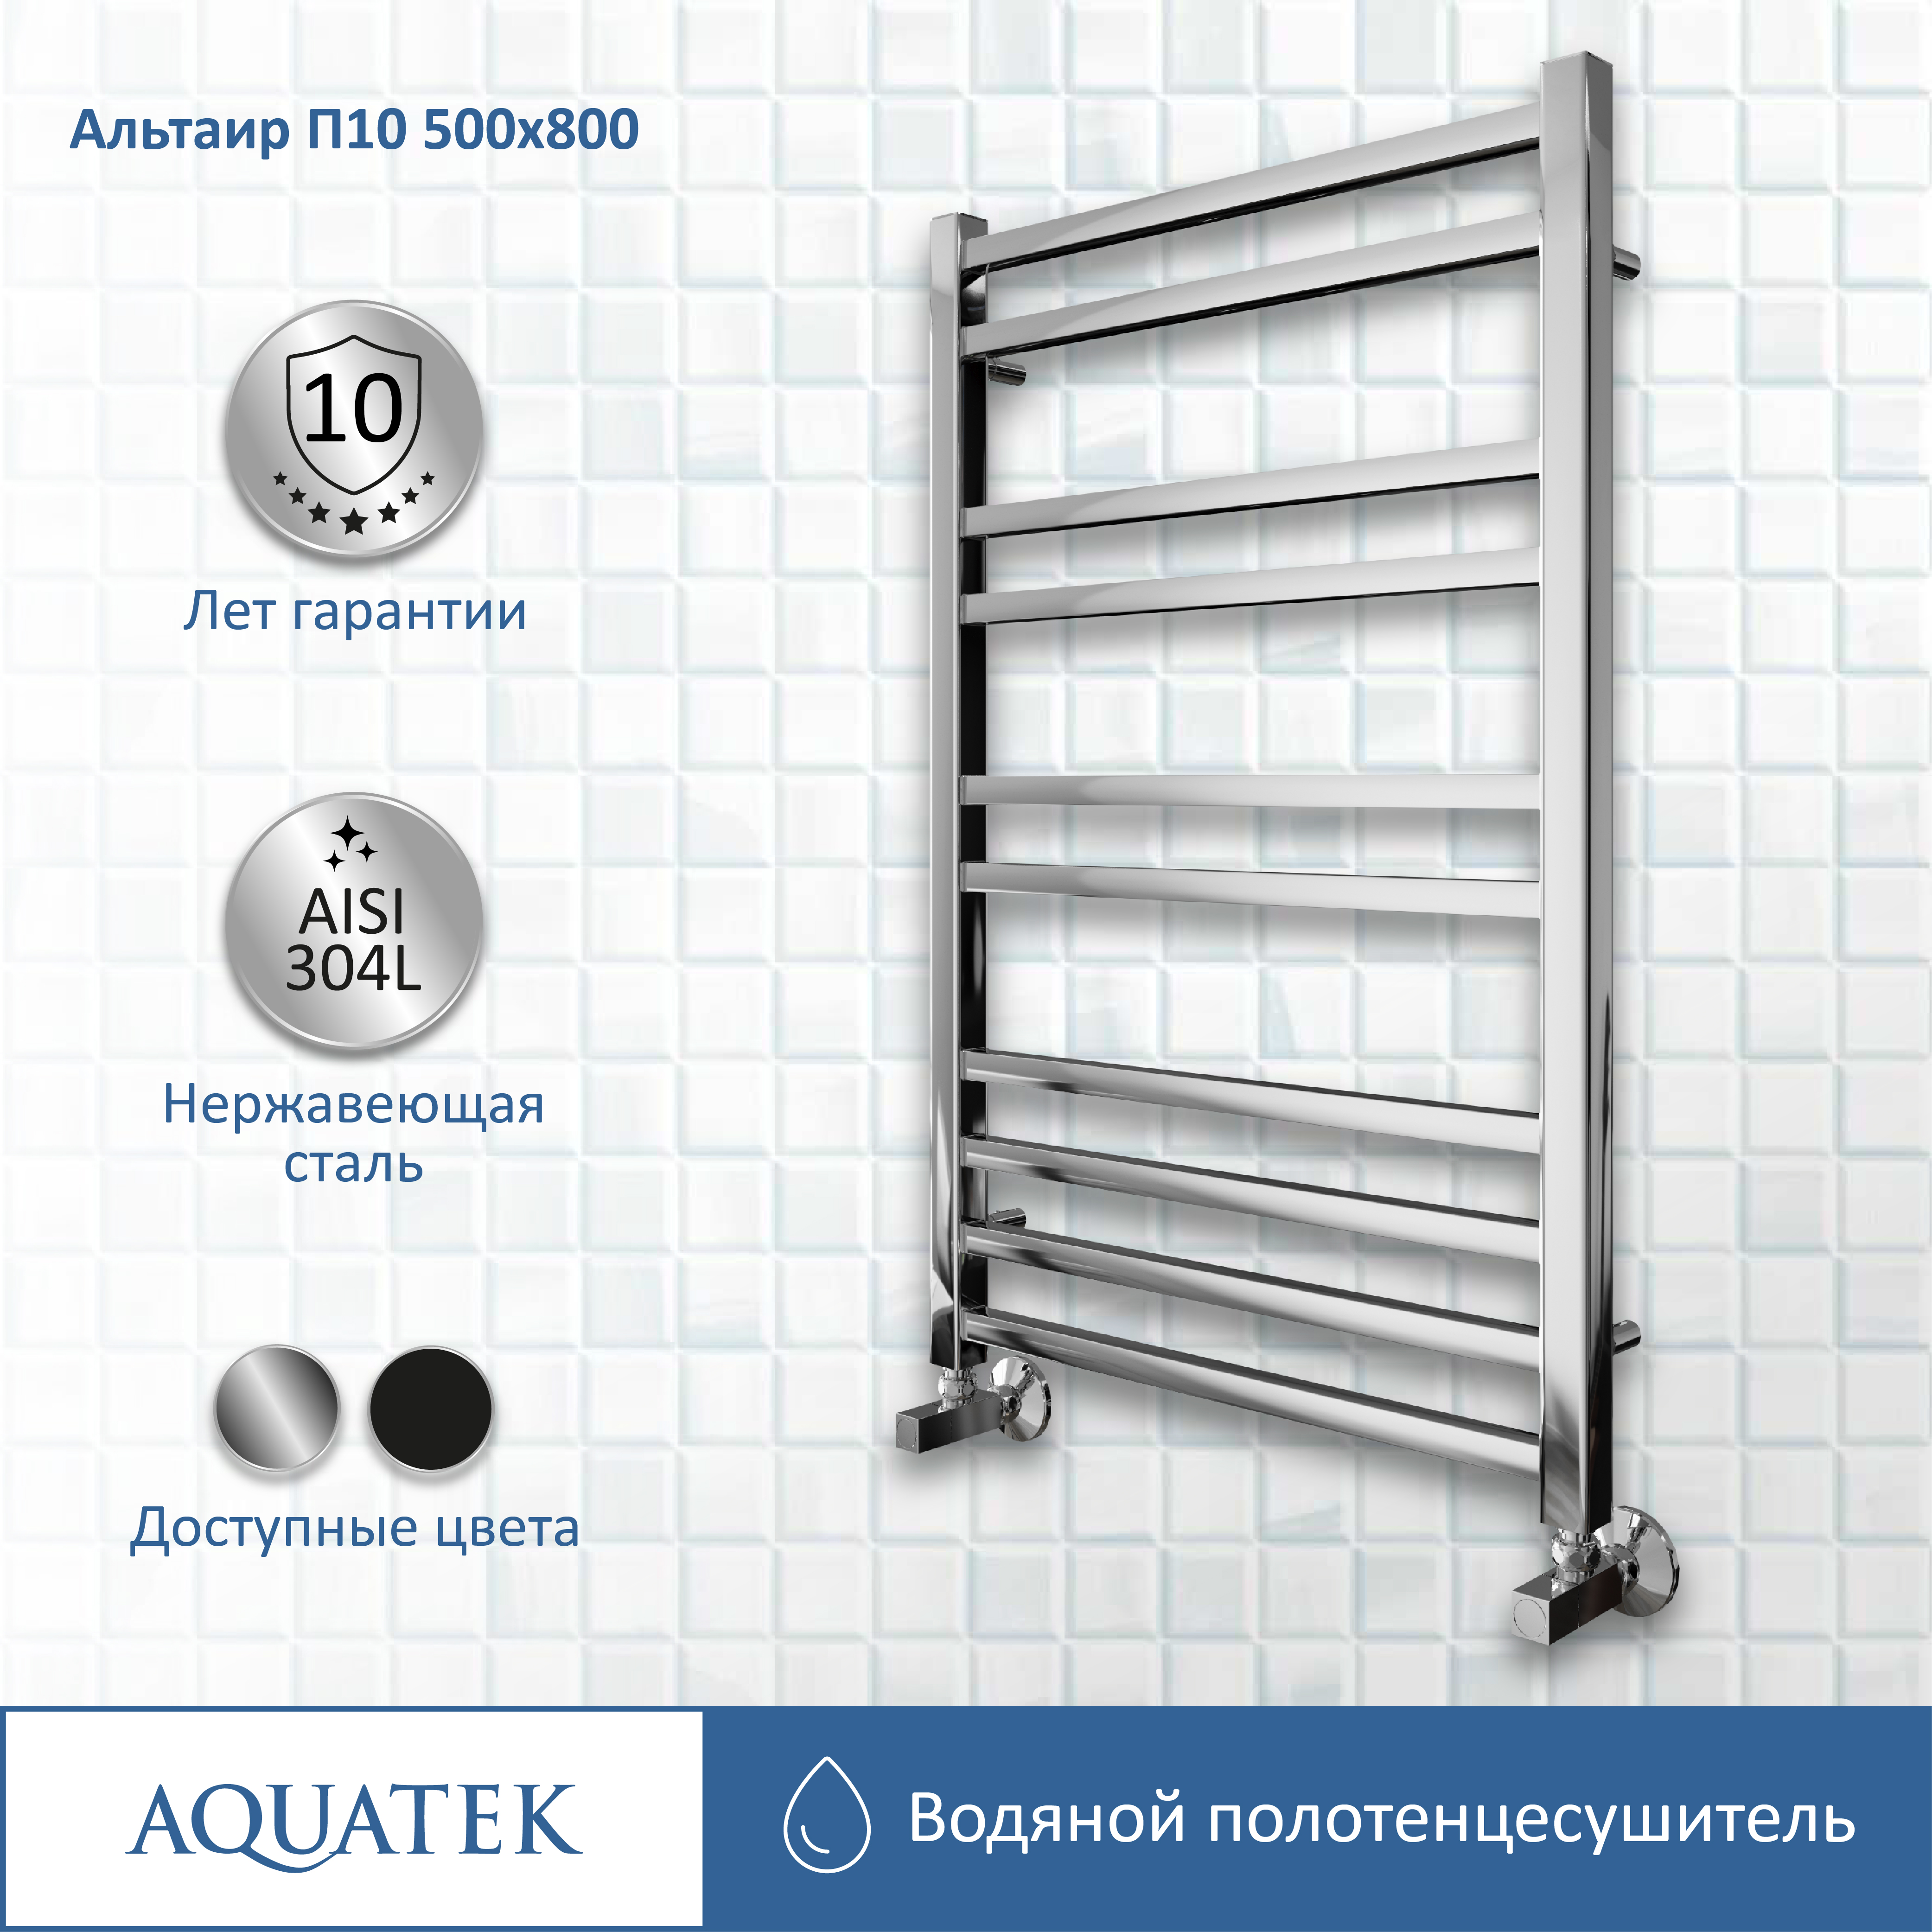 Полотенцесушитель водяной Aquatek Альтаир П10 500х800 AQ KK1080CH - 10